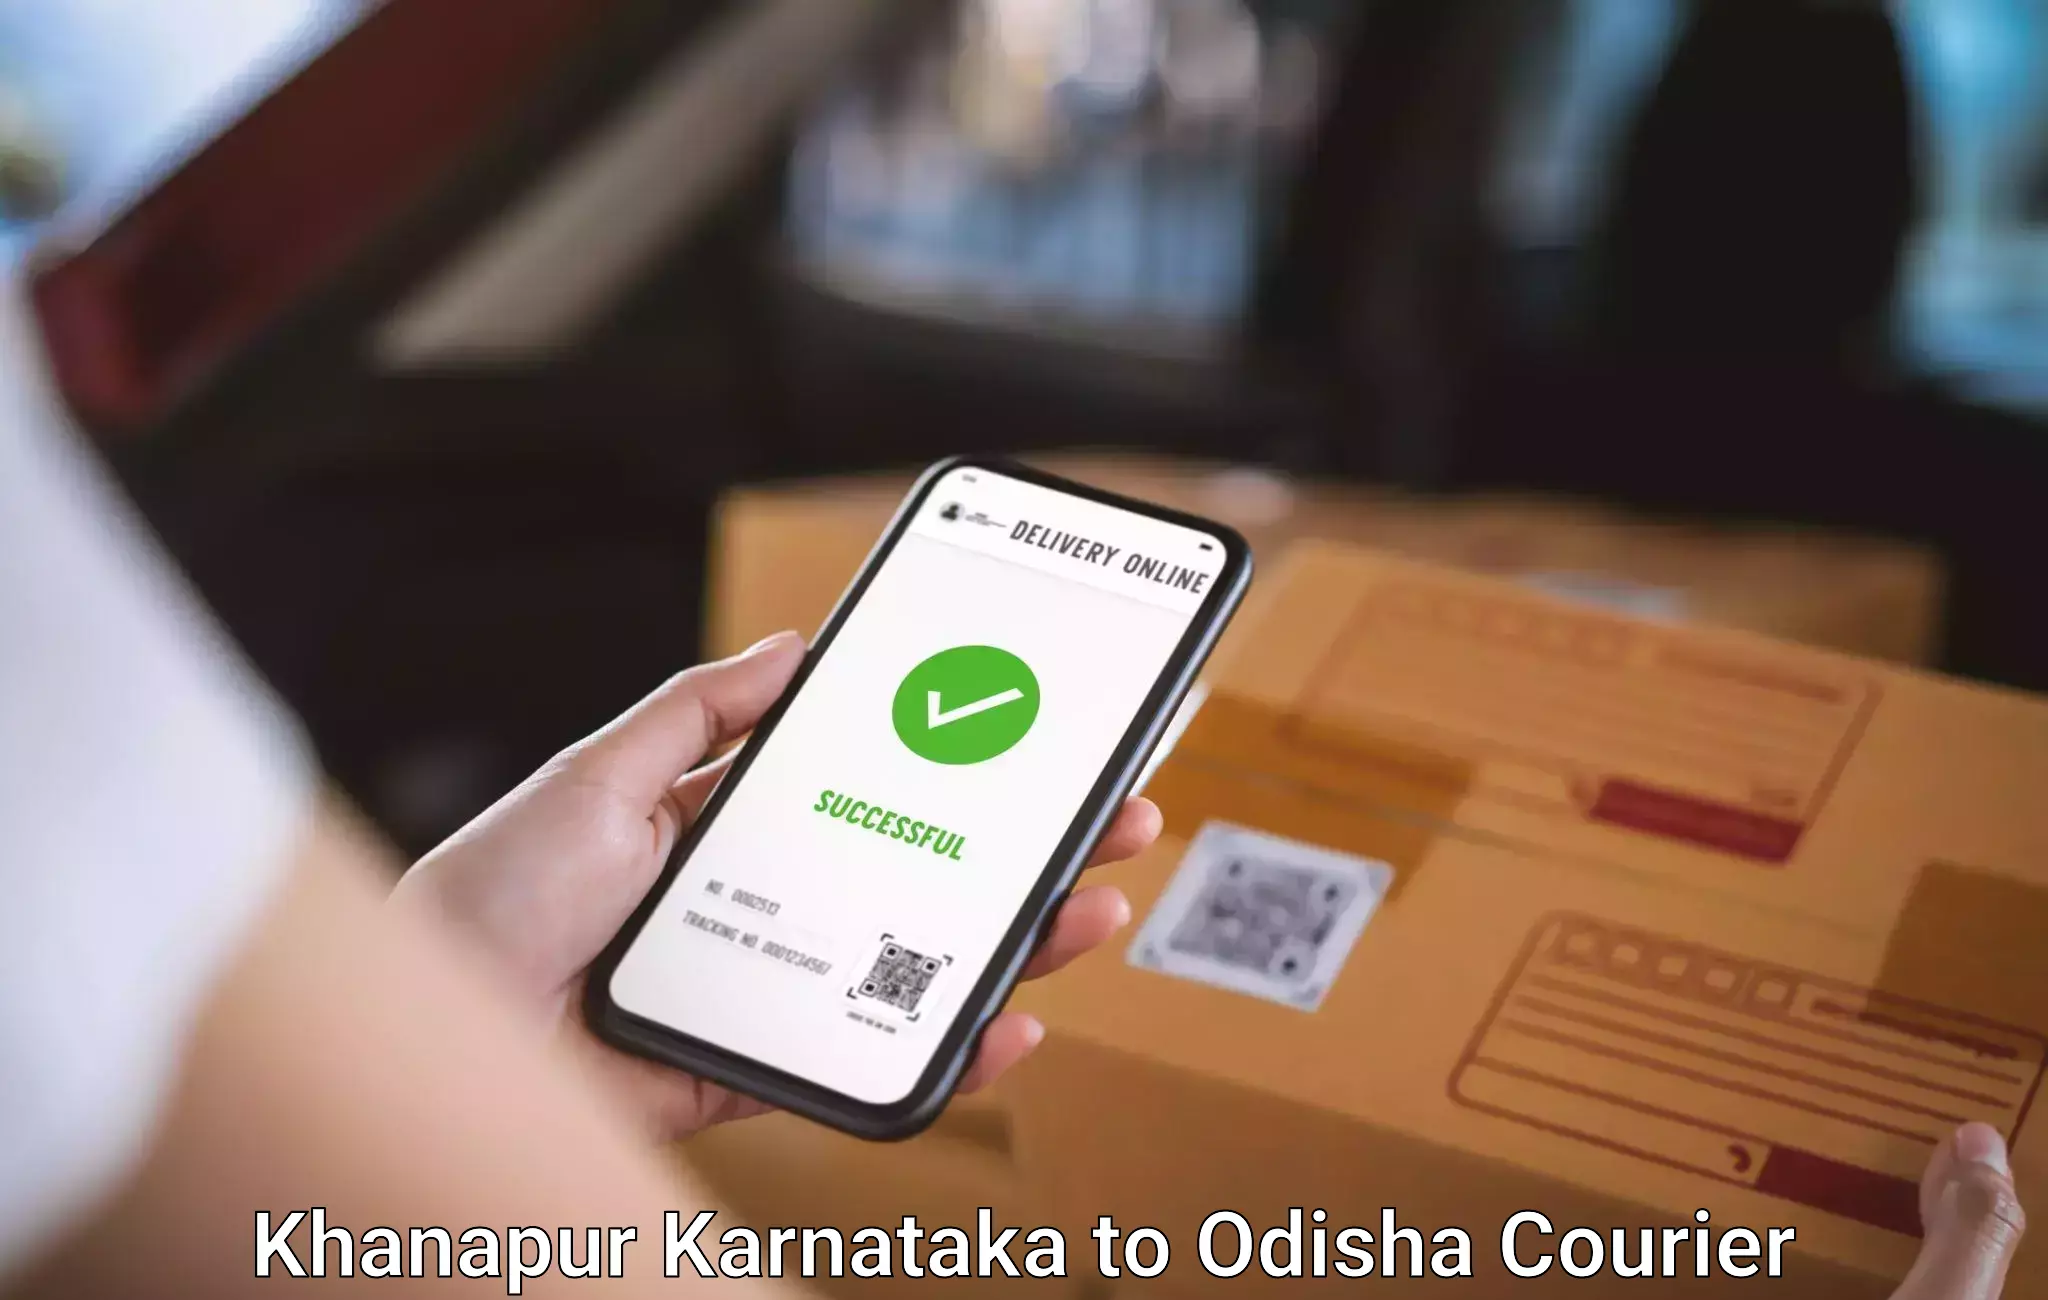 Personal effects shipping Khanapur Karnataka to Nirakarpur